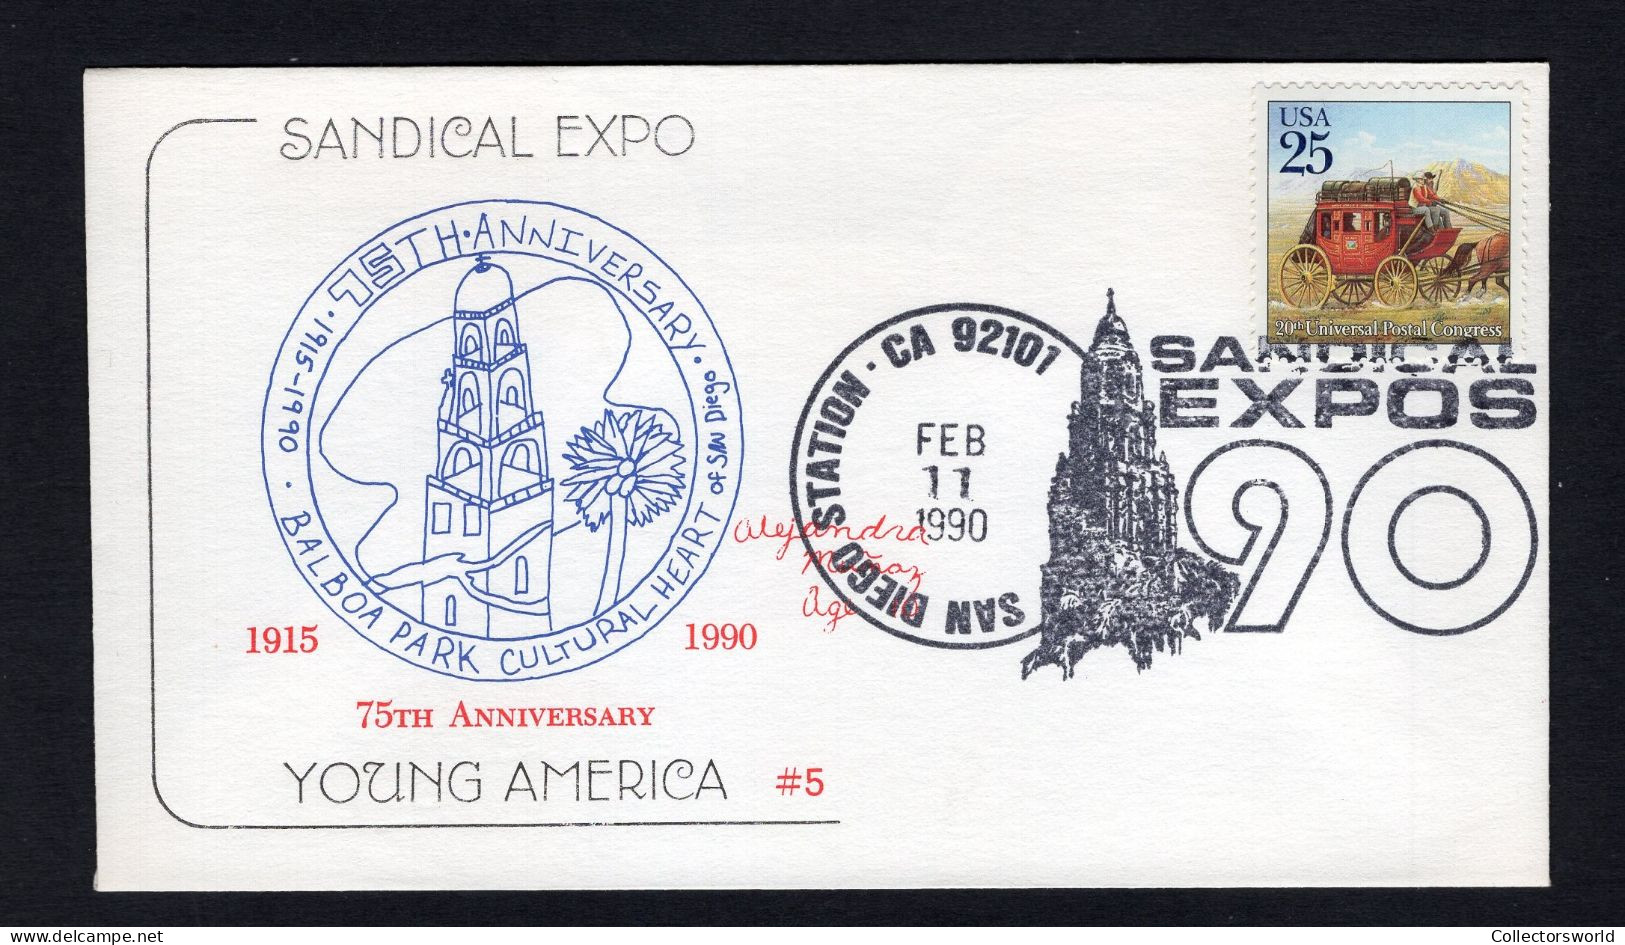 USA 1990 FDC Sandical Expo - Balboa Park Cultural Heart - Schmuck-FDC